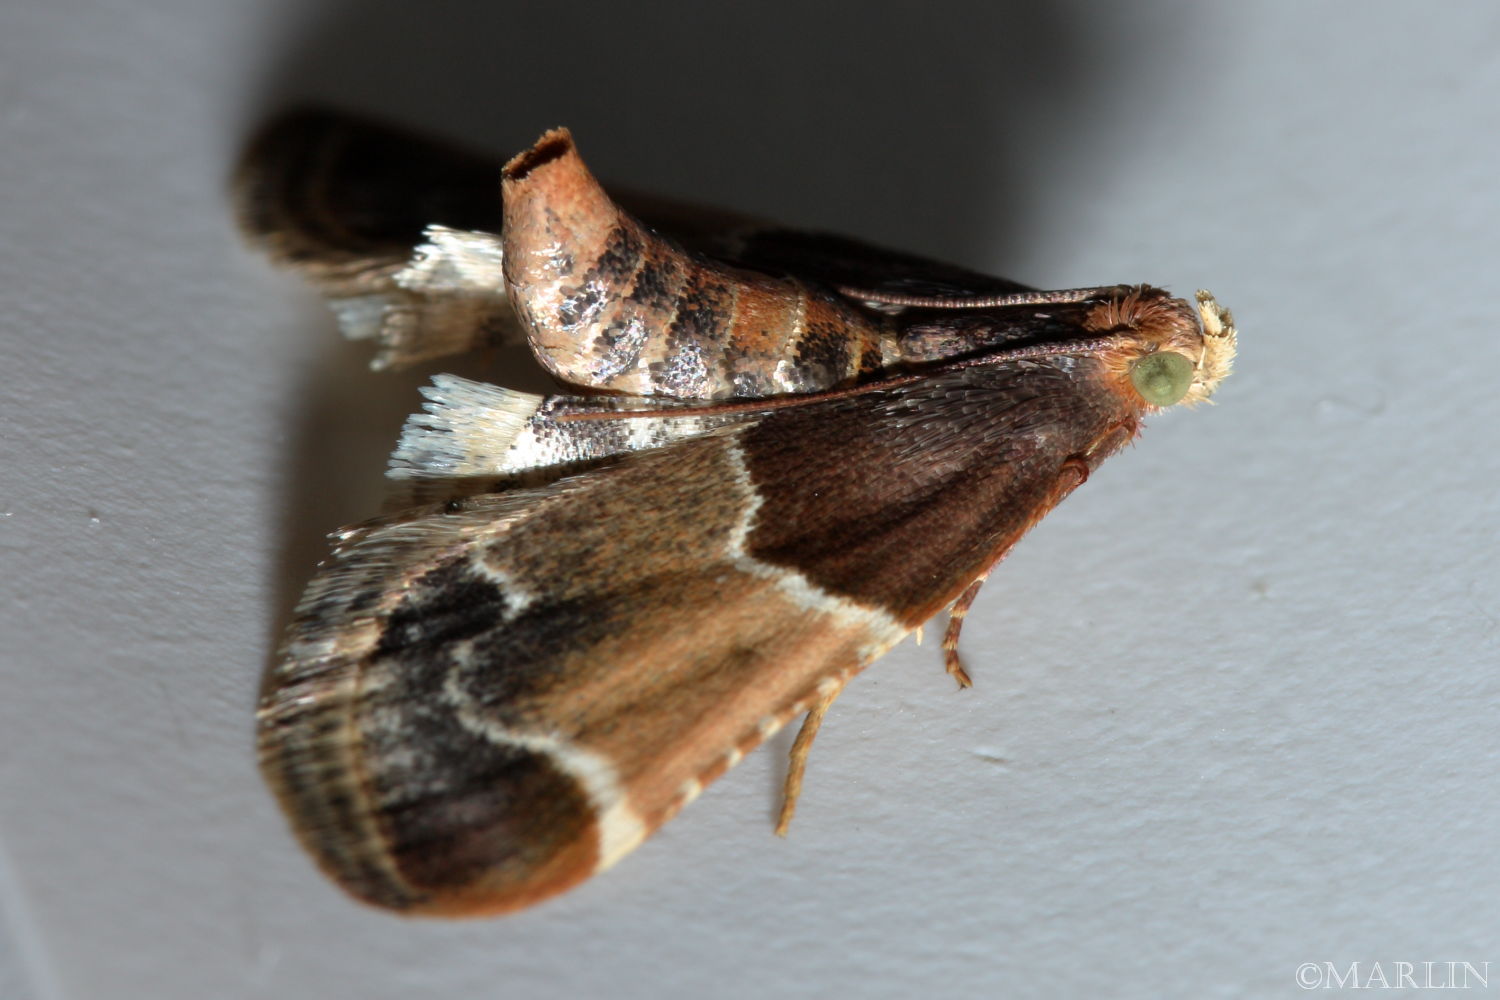 Meal Moth - Pyralis farinalis